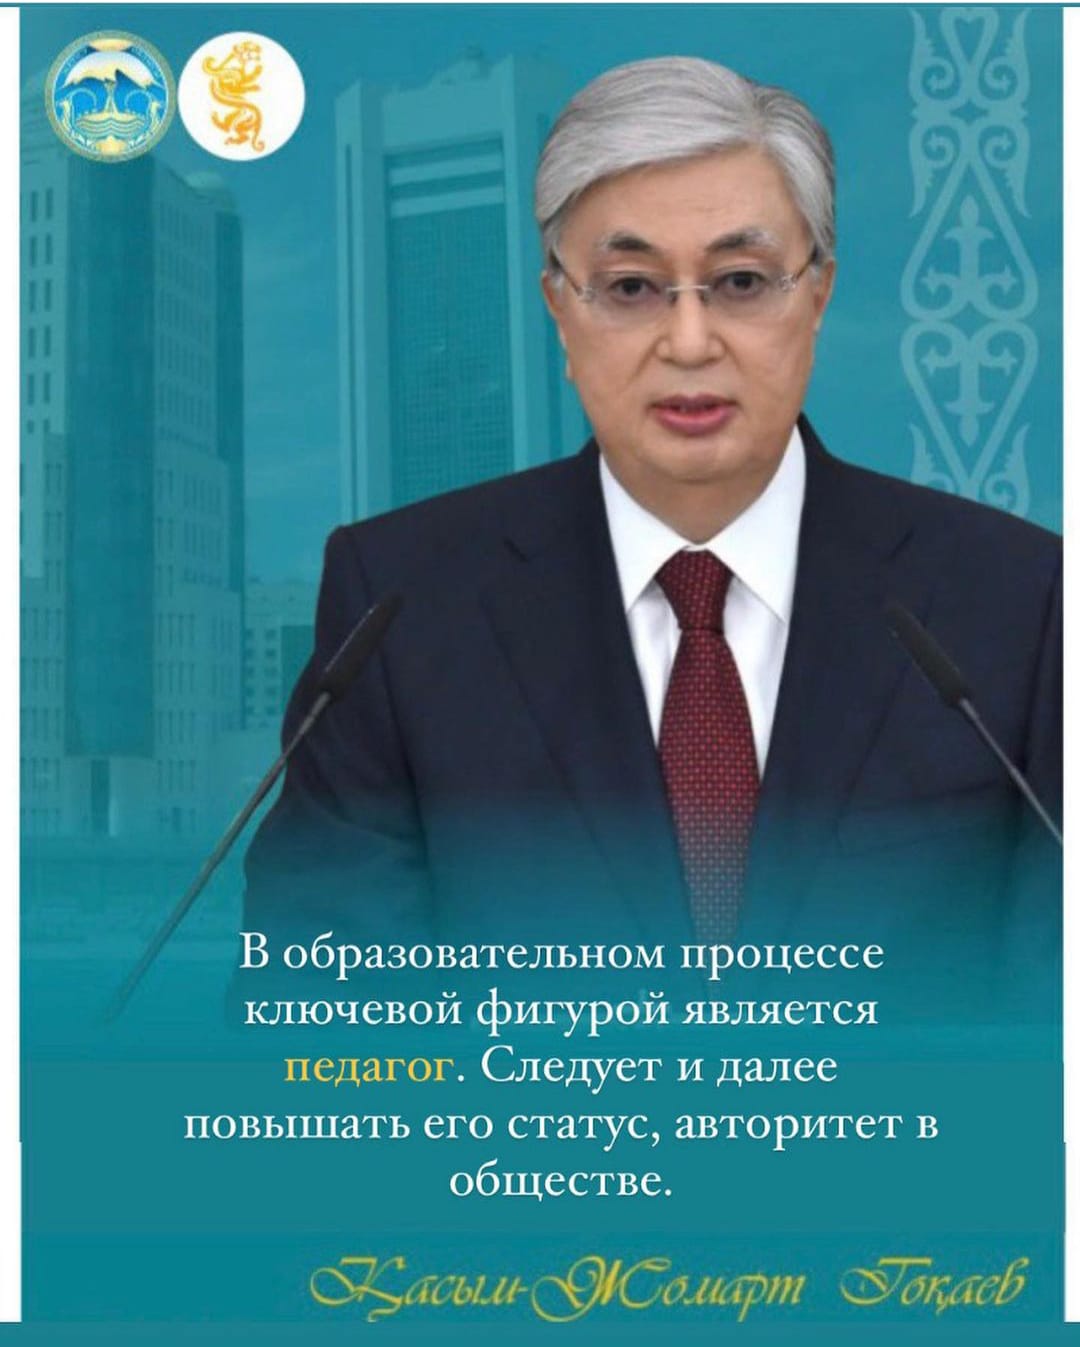 Глава государства Касым-Жомарт Токаев на открытии первой сессии Парламента VIII созыва сказал о сфере образования